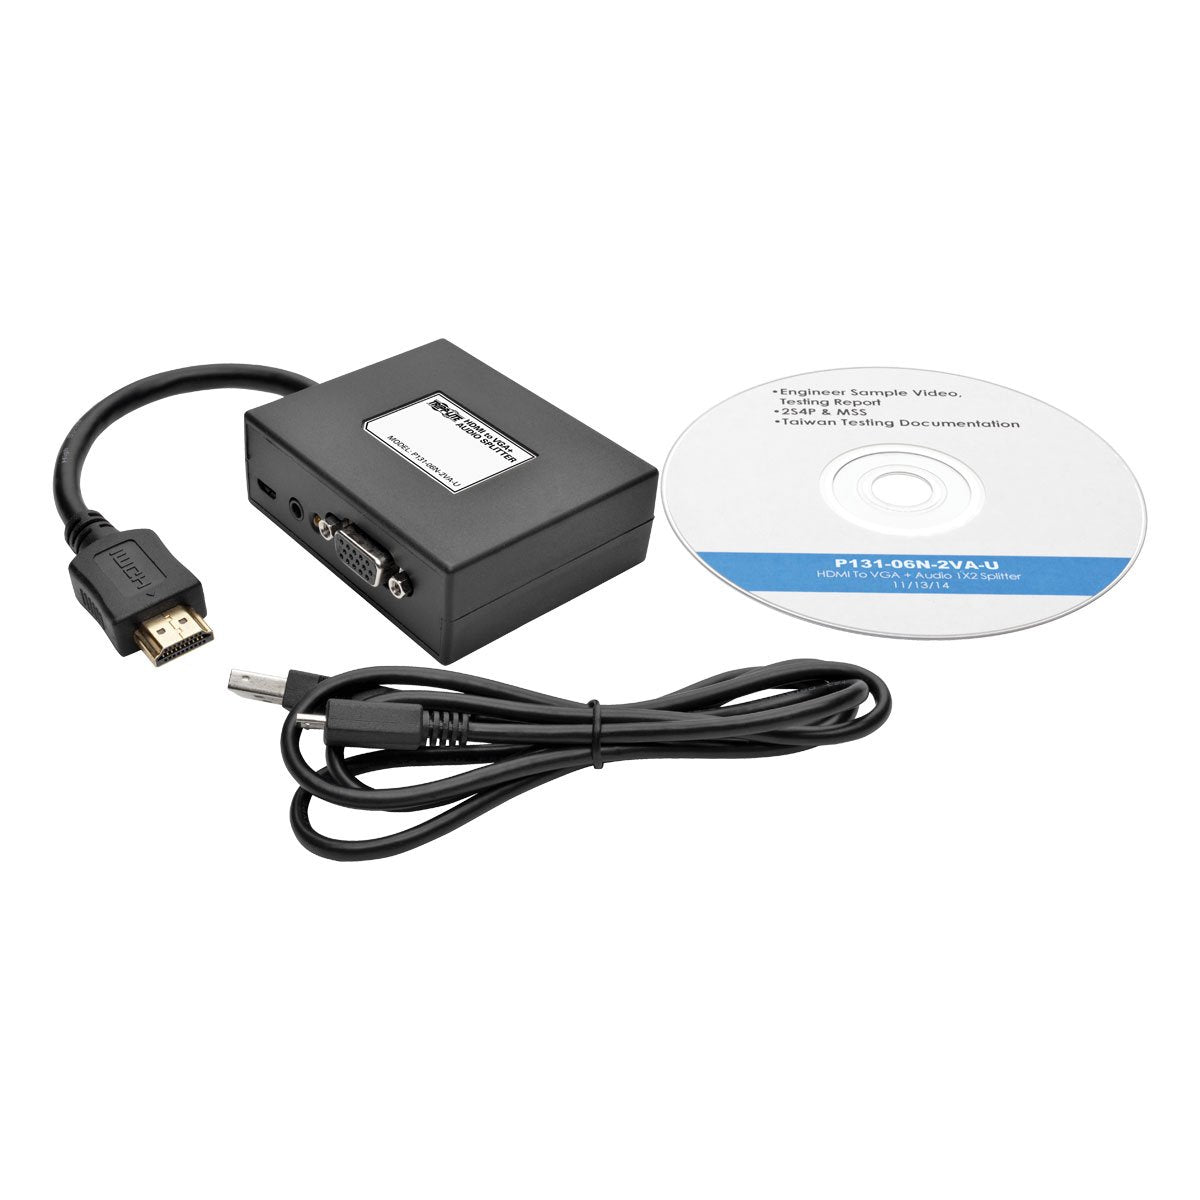 Tripp Lite 2-Port HDMI to VGA Splitter (M/2F), Audio/Video Adapter, HDMI to HD15, 1080p (P131-06N-2VA-U)